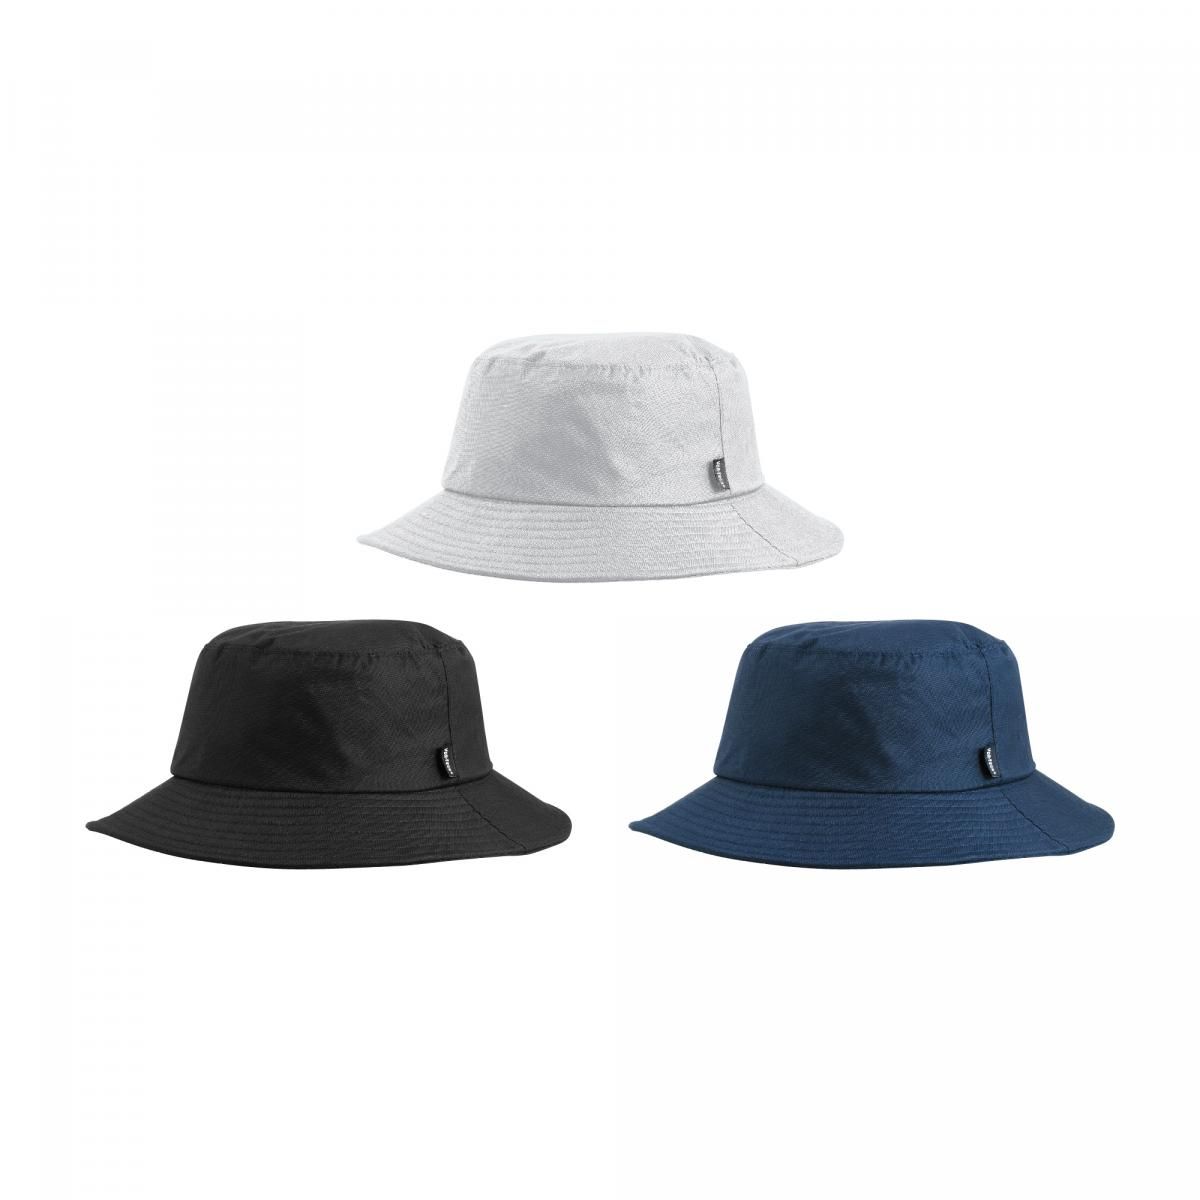 Vor-Tech Water & Wind Resistant Bucket Hat